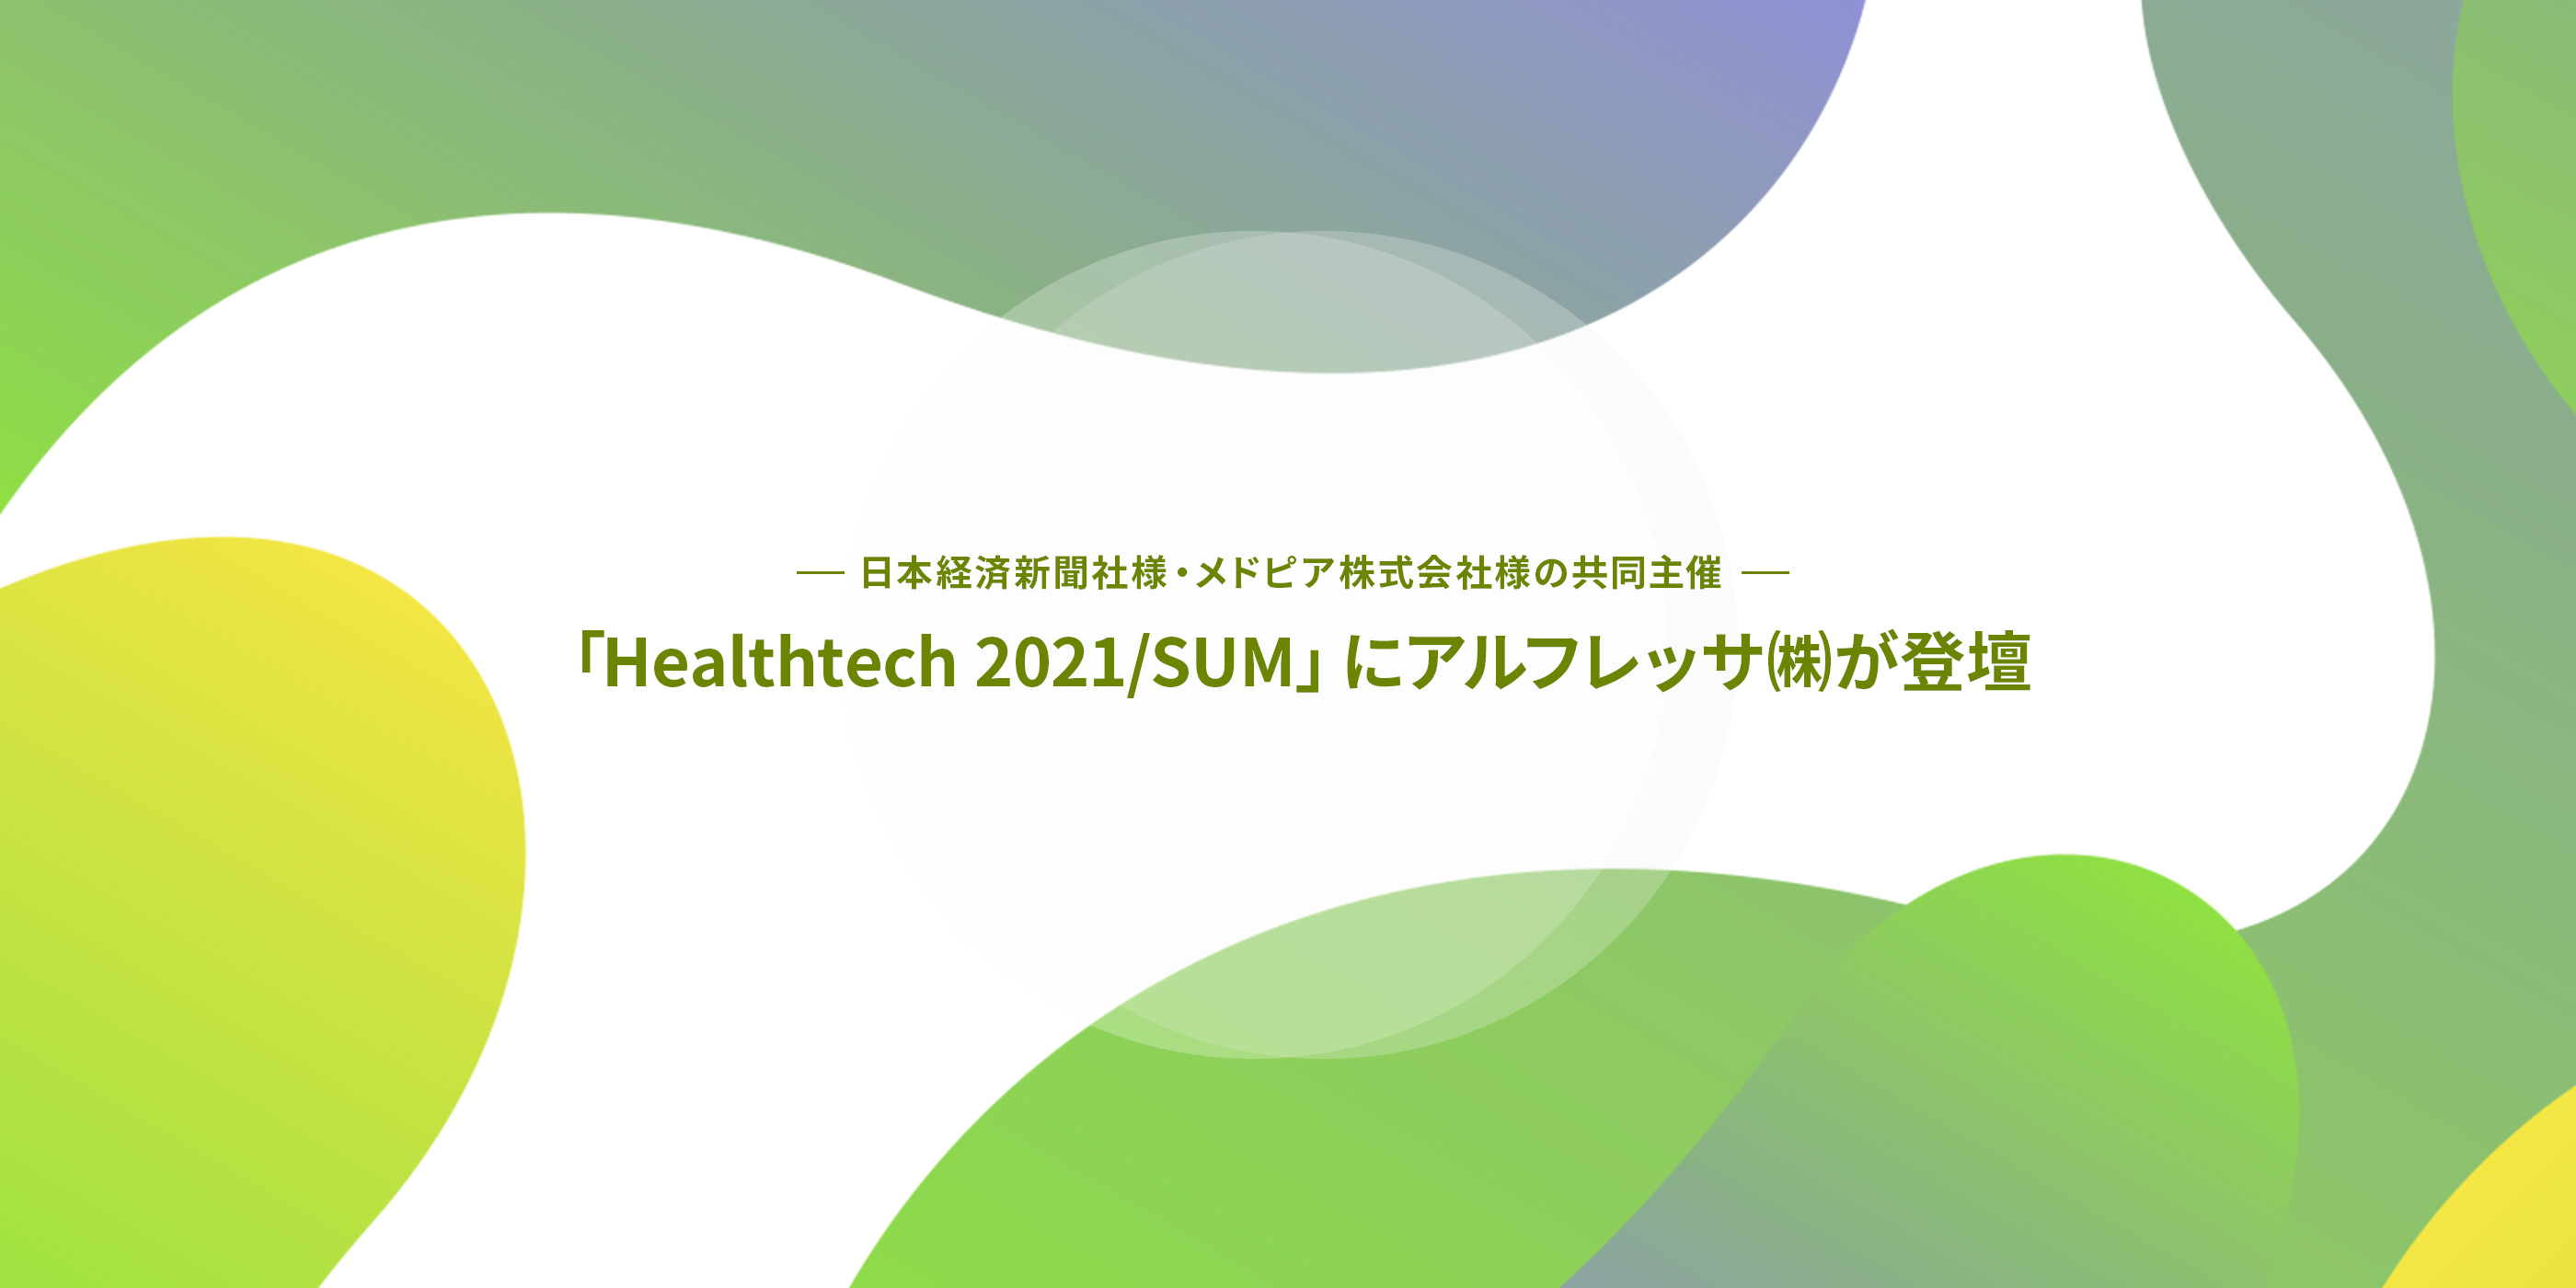 日本経済新聞社様・メドピア株式会社様の共同主催 「Healthtech 2021/SUM」にアルフレッサ（株）が登壇